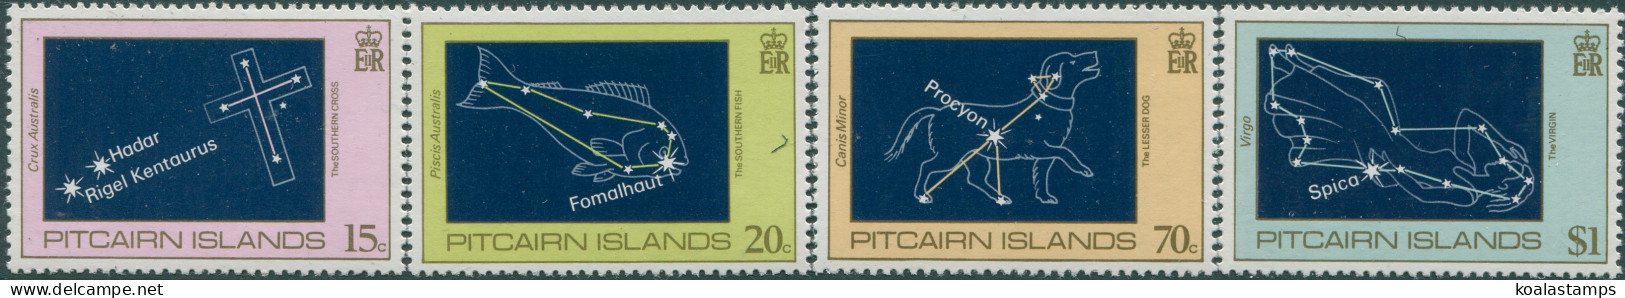 Pitcairn Islands 1984 SG259-262 Night Sky Set MNH - Pitcairneilanden